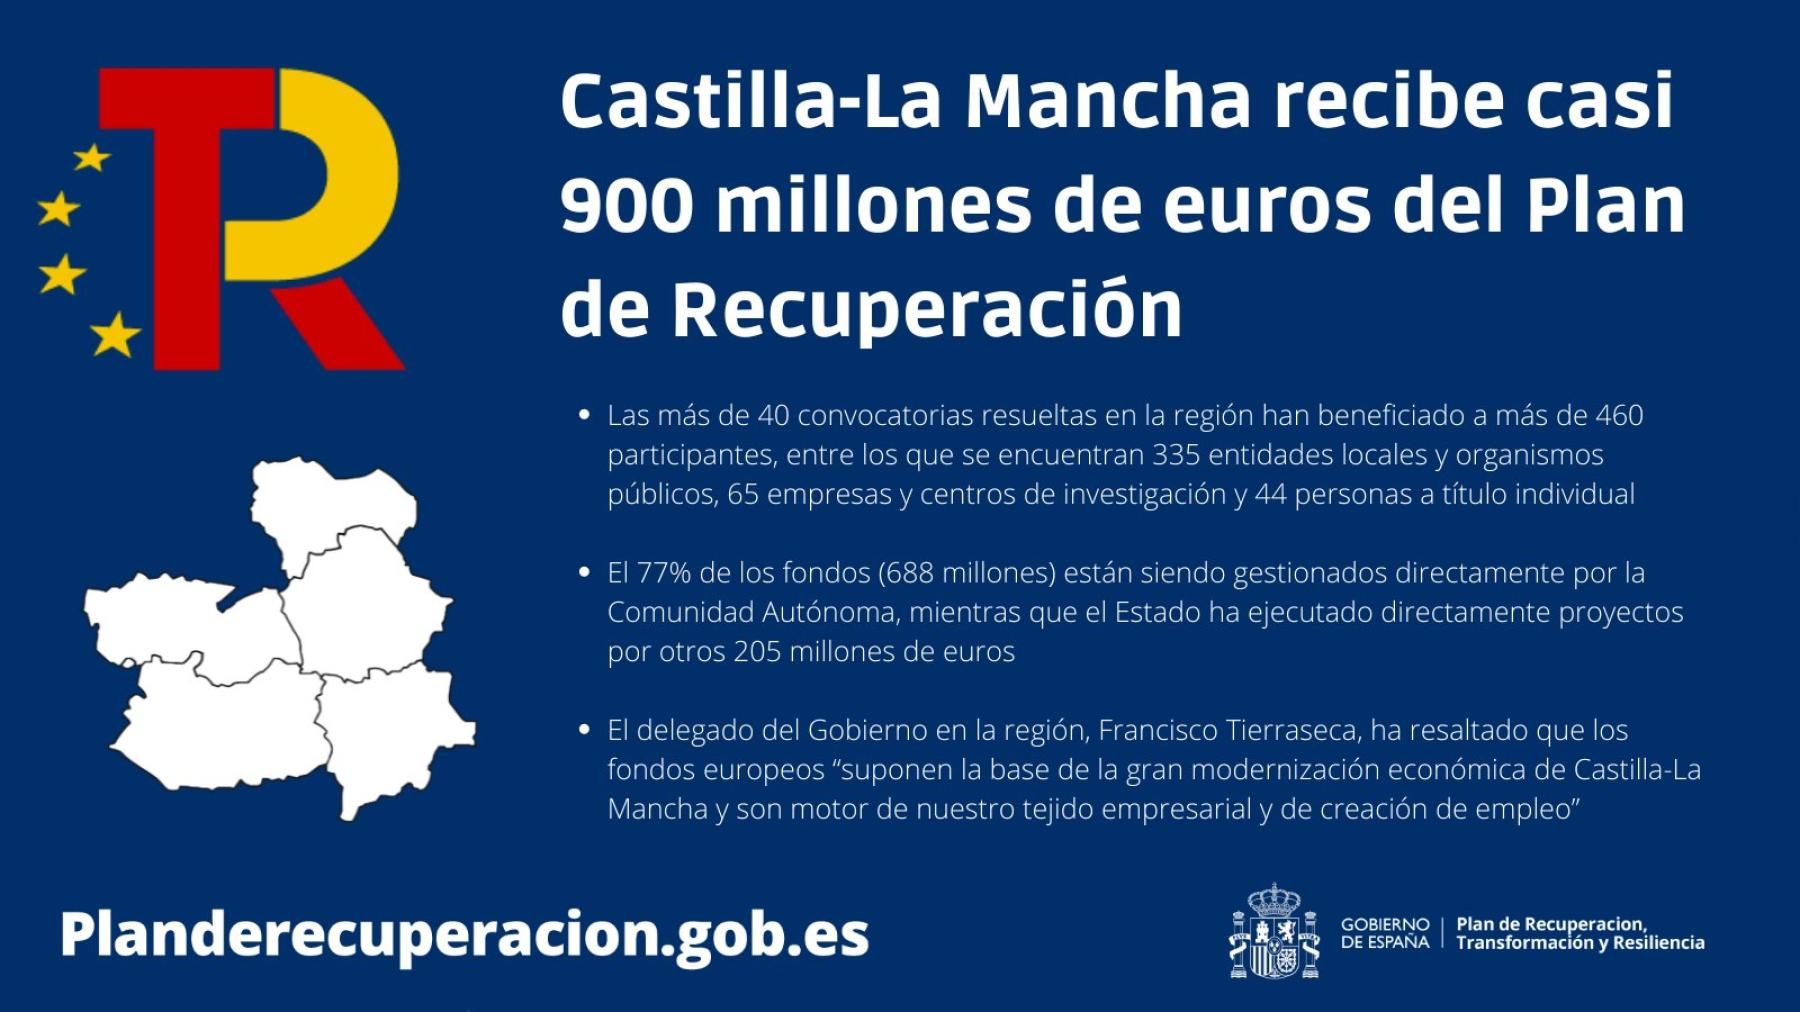 Castilla-La Mancha recibe casi 900 millones de euros del Plan de Recuperación